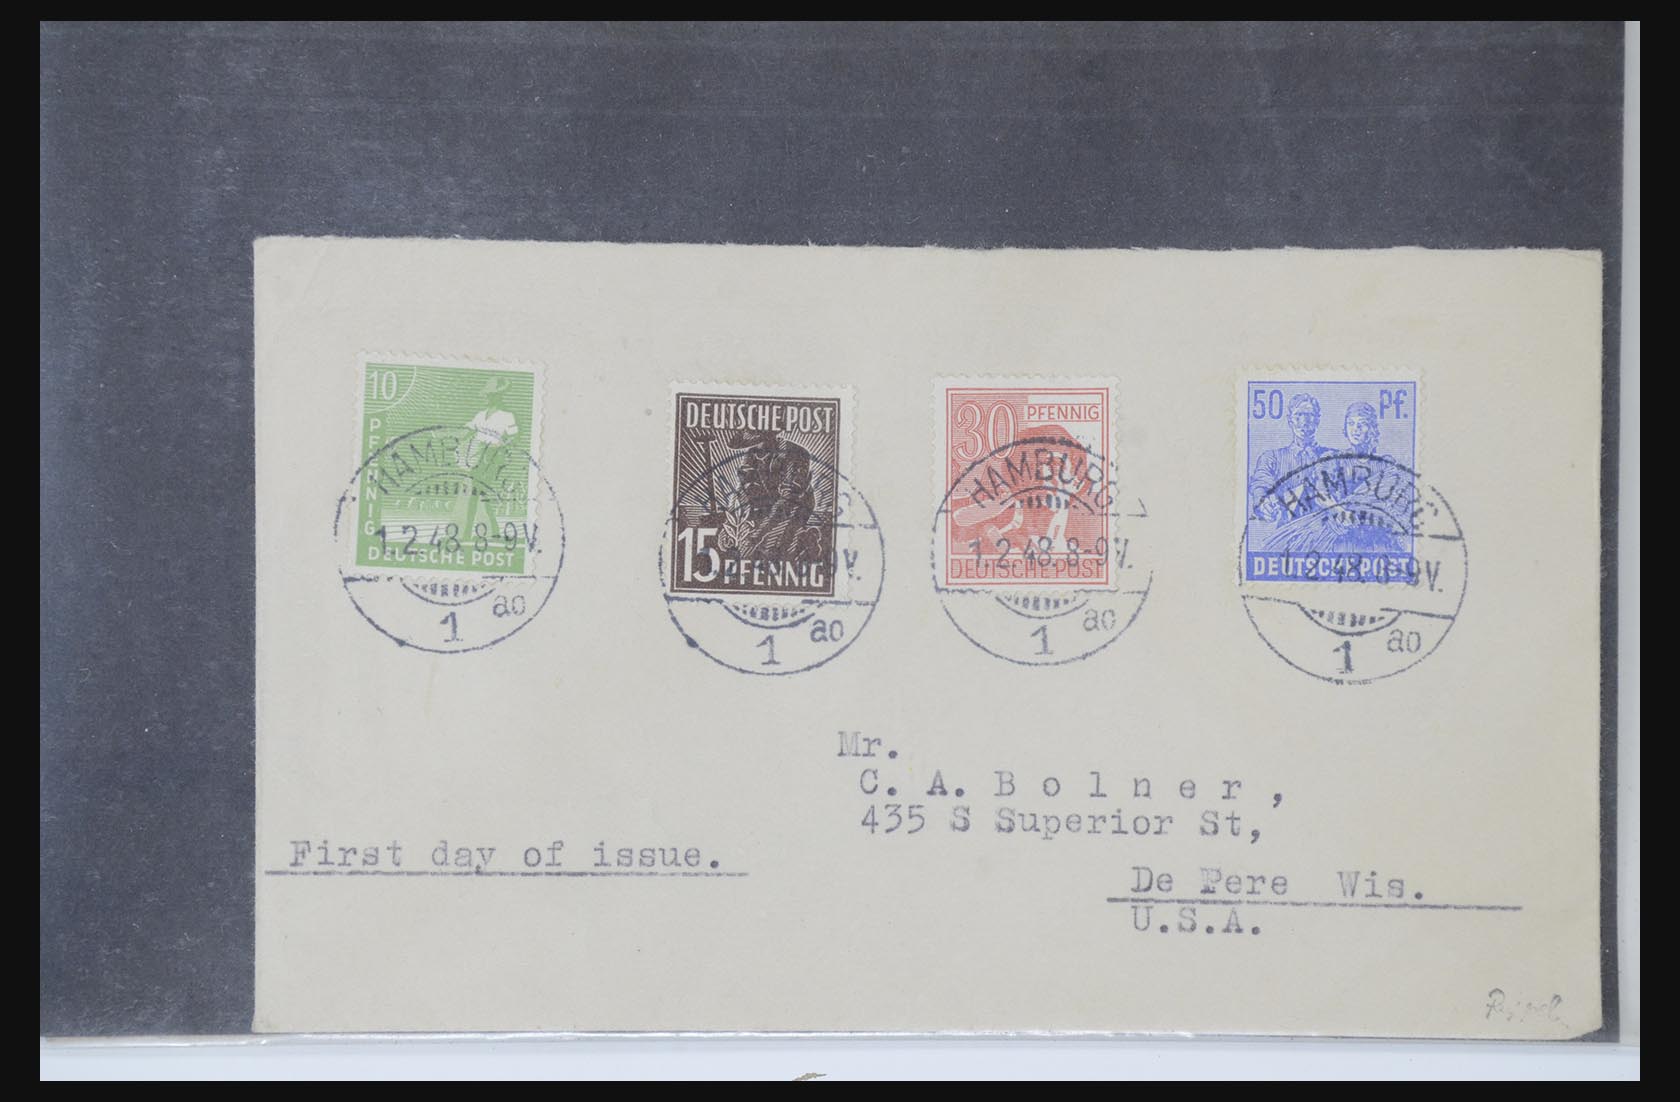 31581 057 - 31581 Duitsland brieven en FDC's 1945-1981.